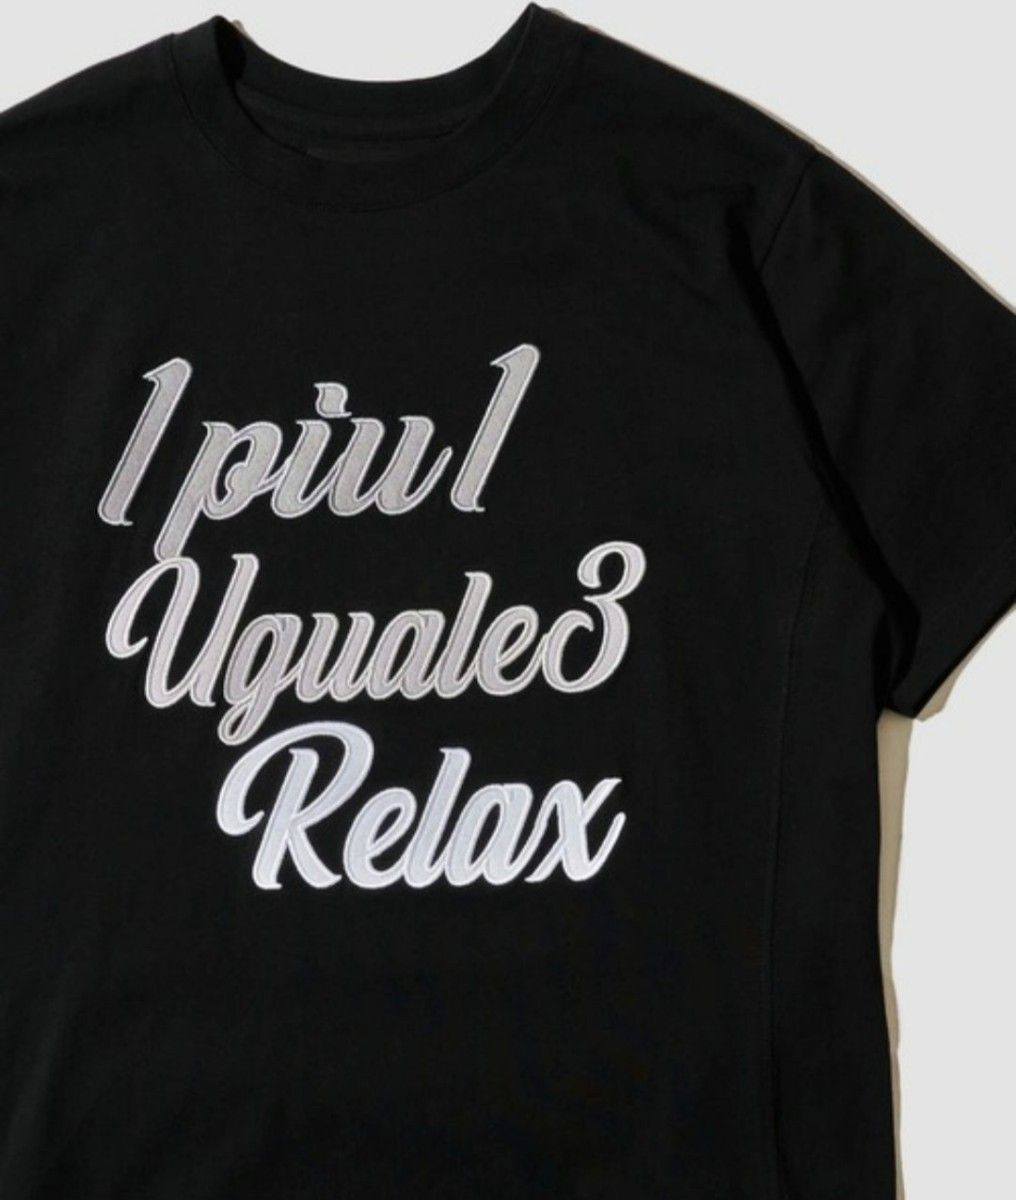 【新品未開封】1PIU1UGUALE3 RELAX 黒 刺繍ロゴ半袖Tシャツ グラフィックプリントTシャツ Lサイズ